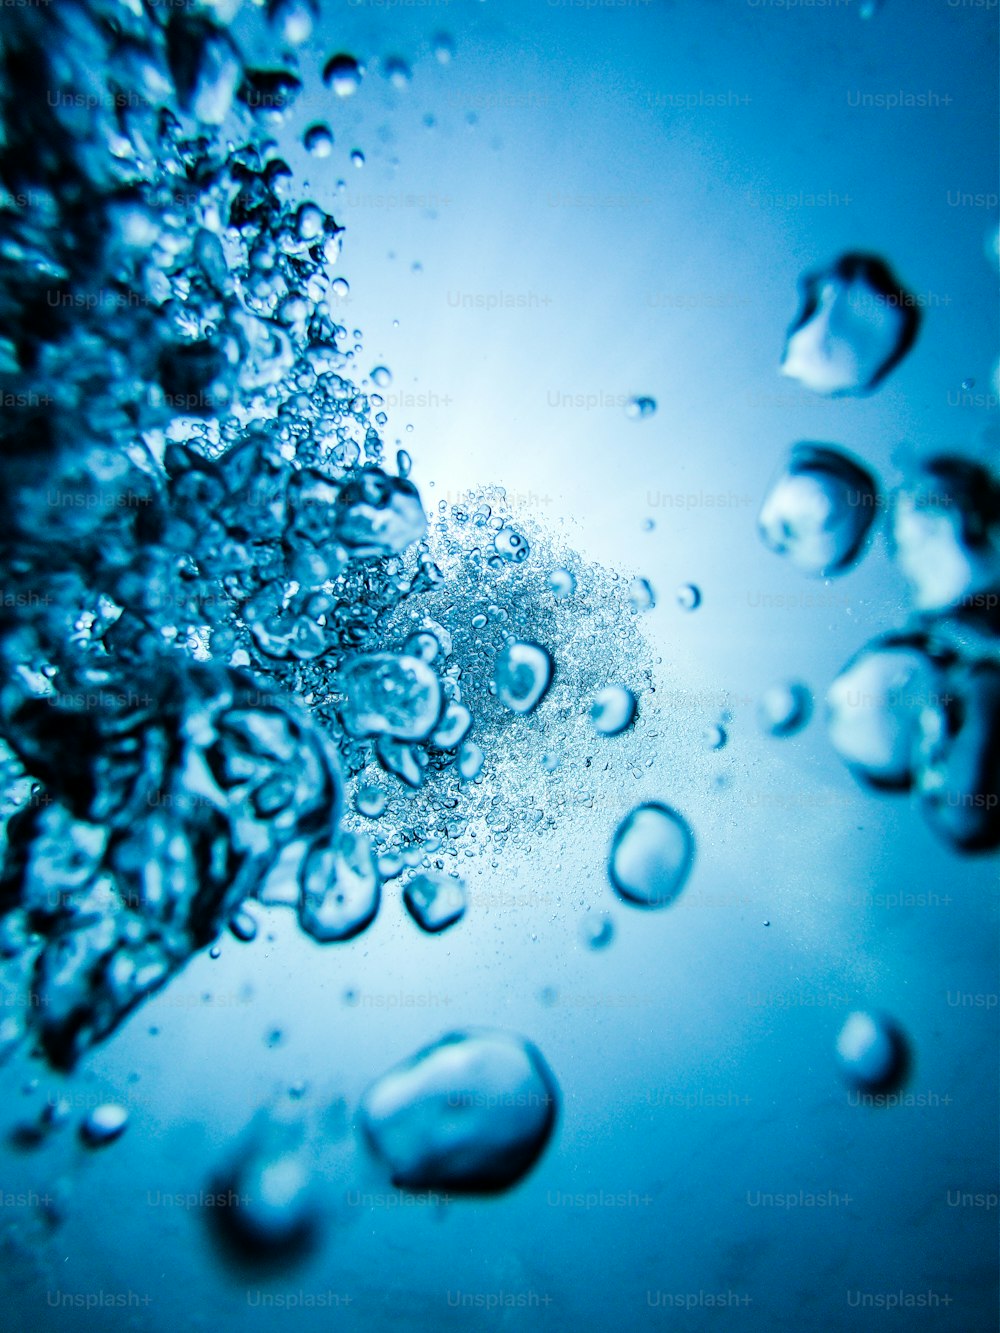 Un primo piano di bolle d'acqua su una superficie blu